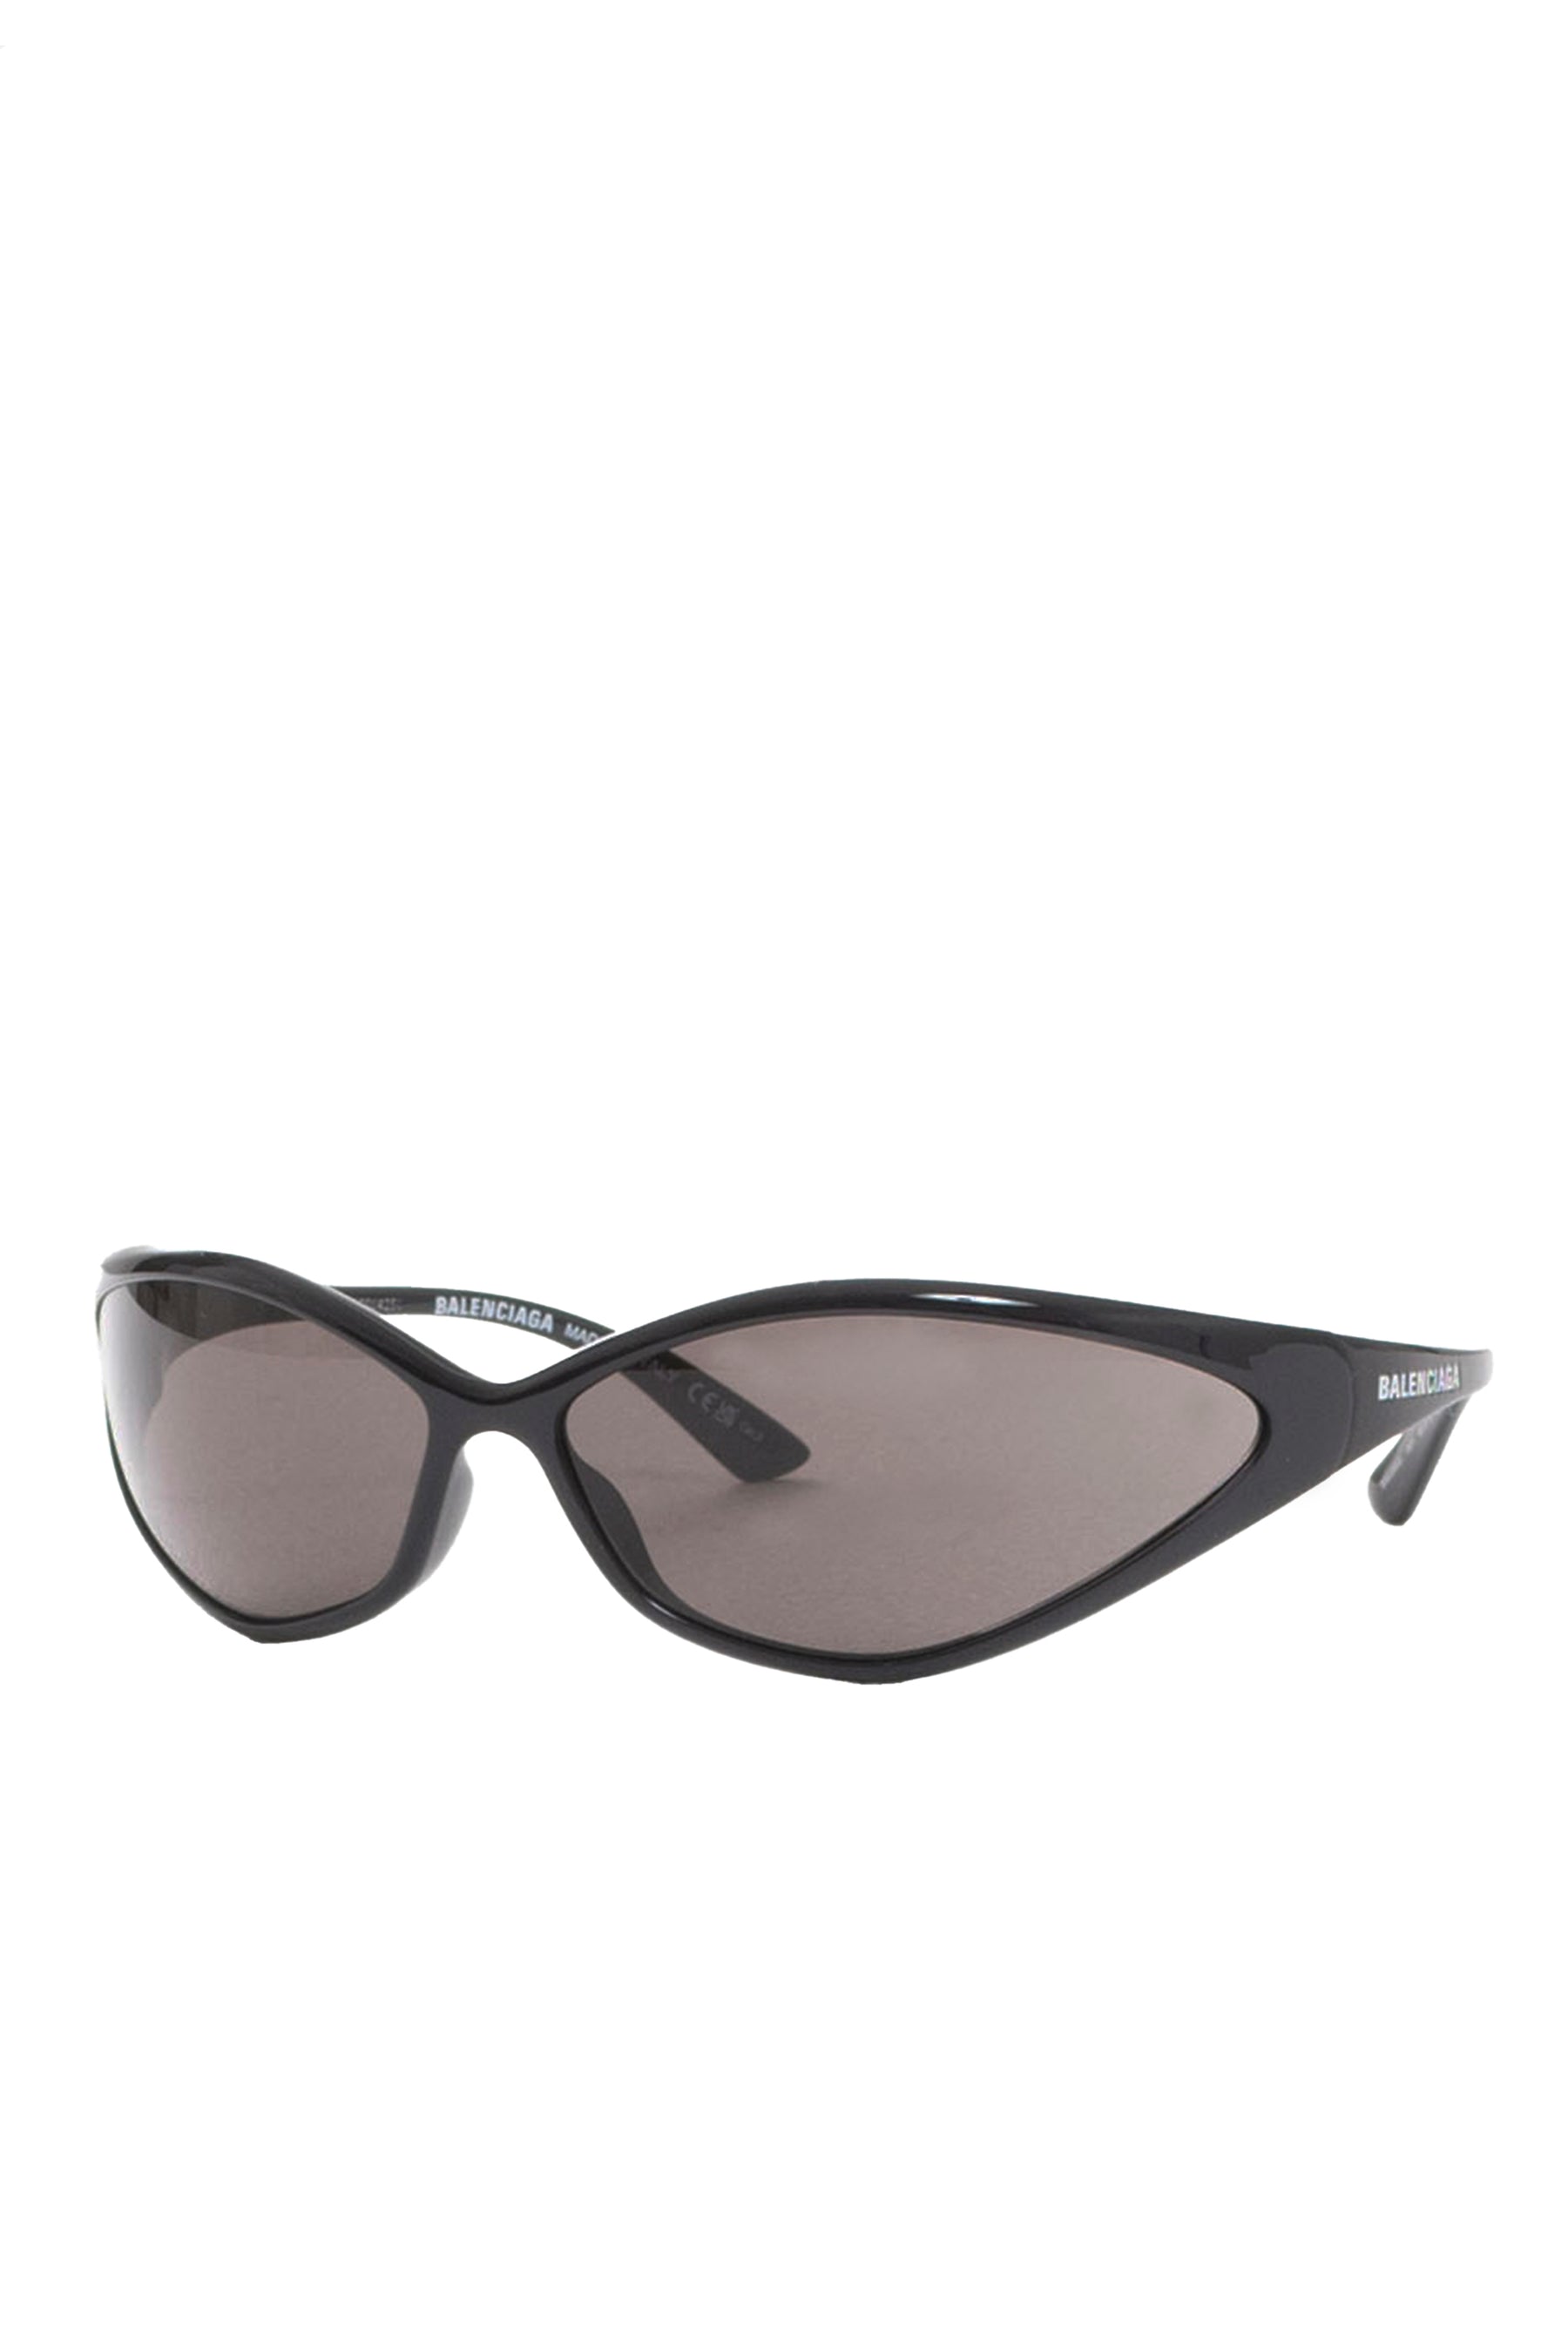 BB Monogram Oval Sunglasses in Black - Balenciaga